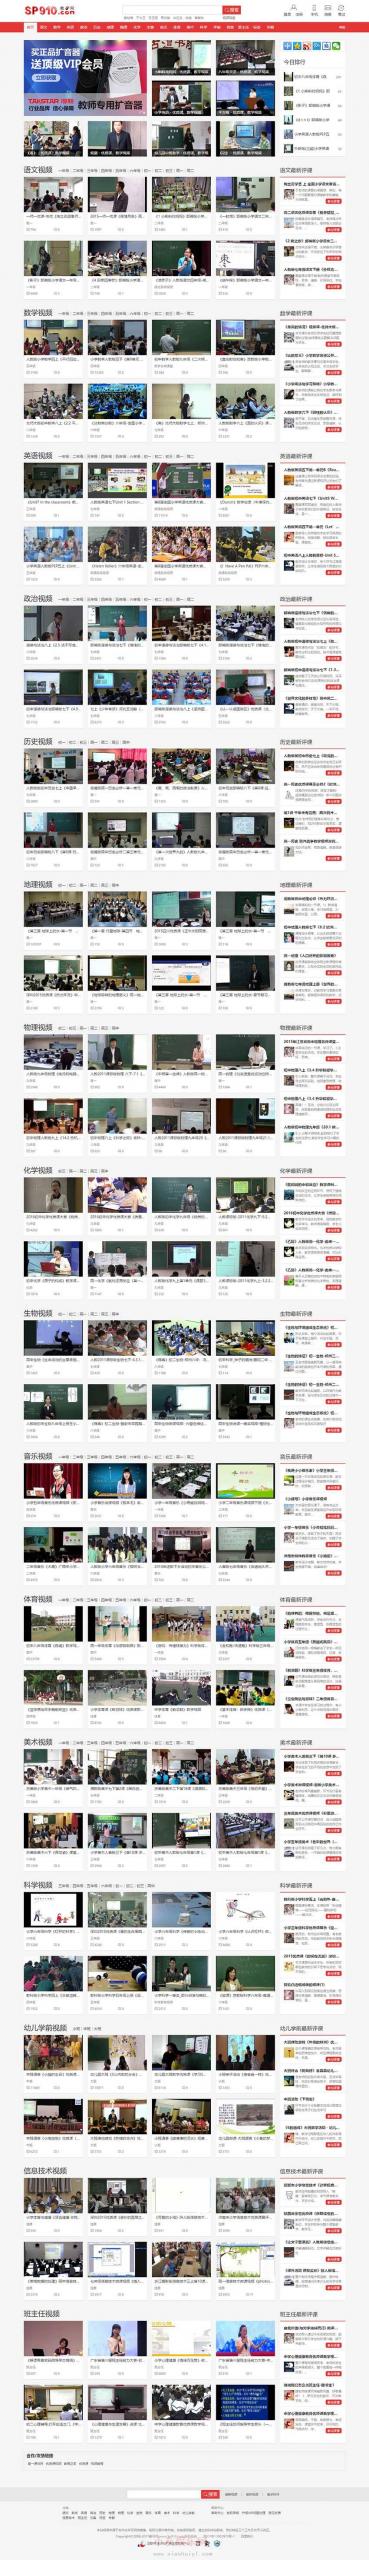 帝国CMS《教视网》在线教学视频网站源码-ABC资源网